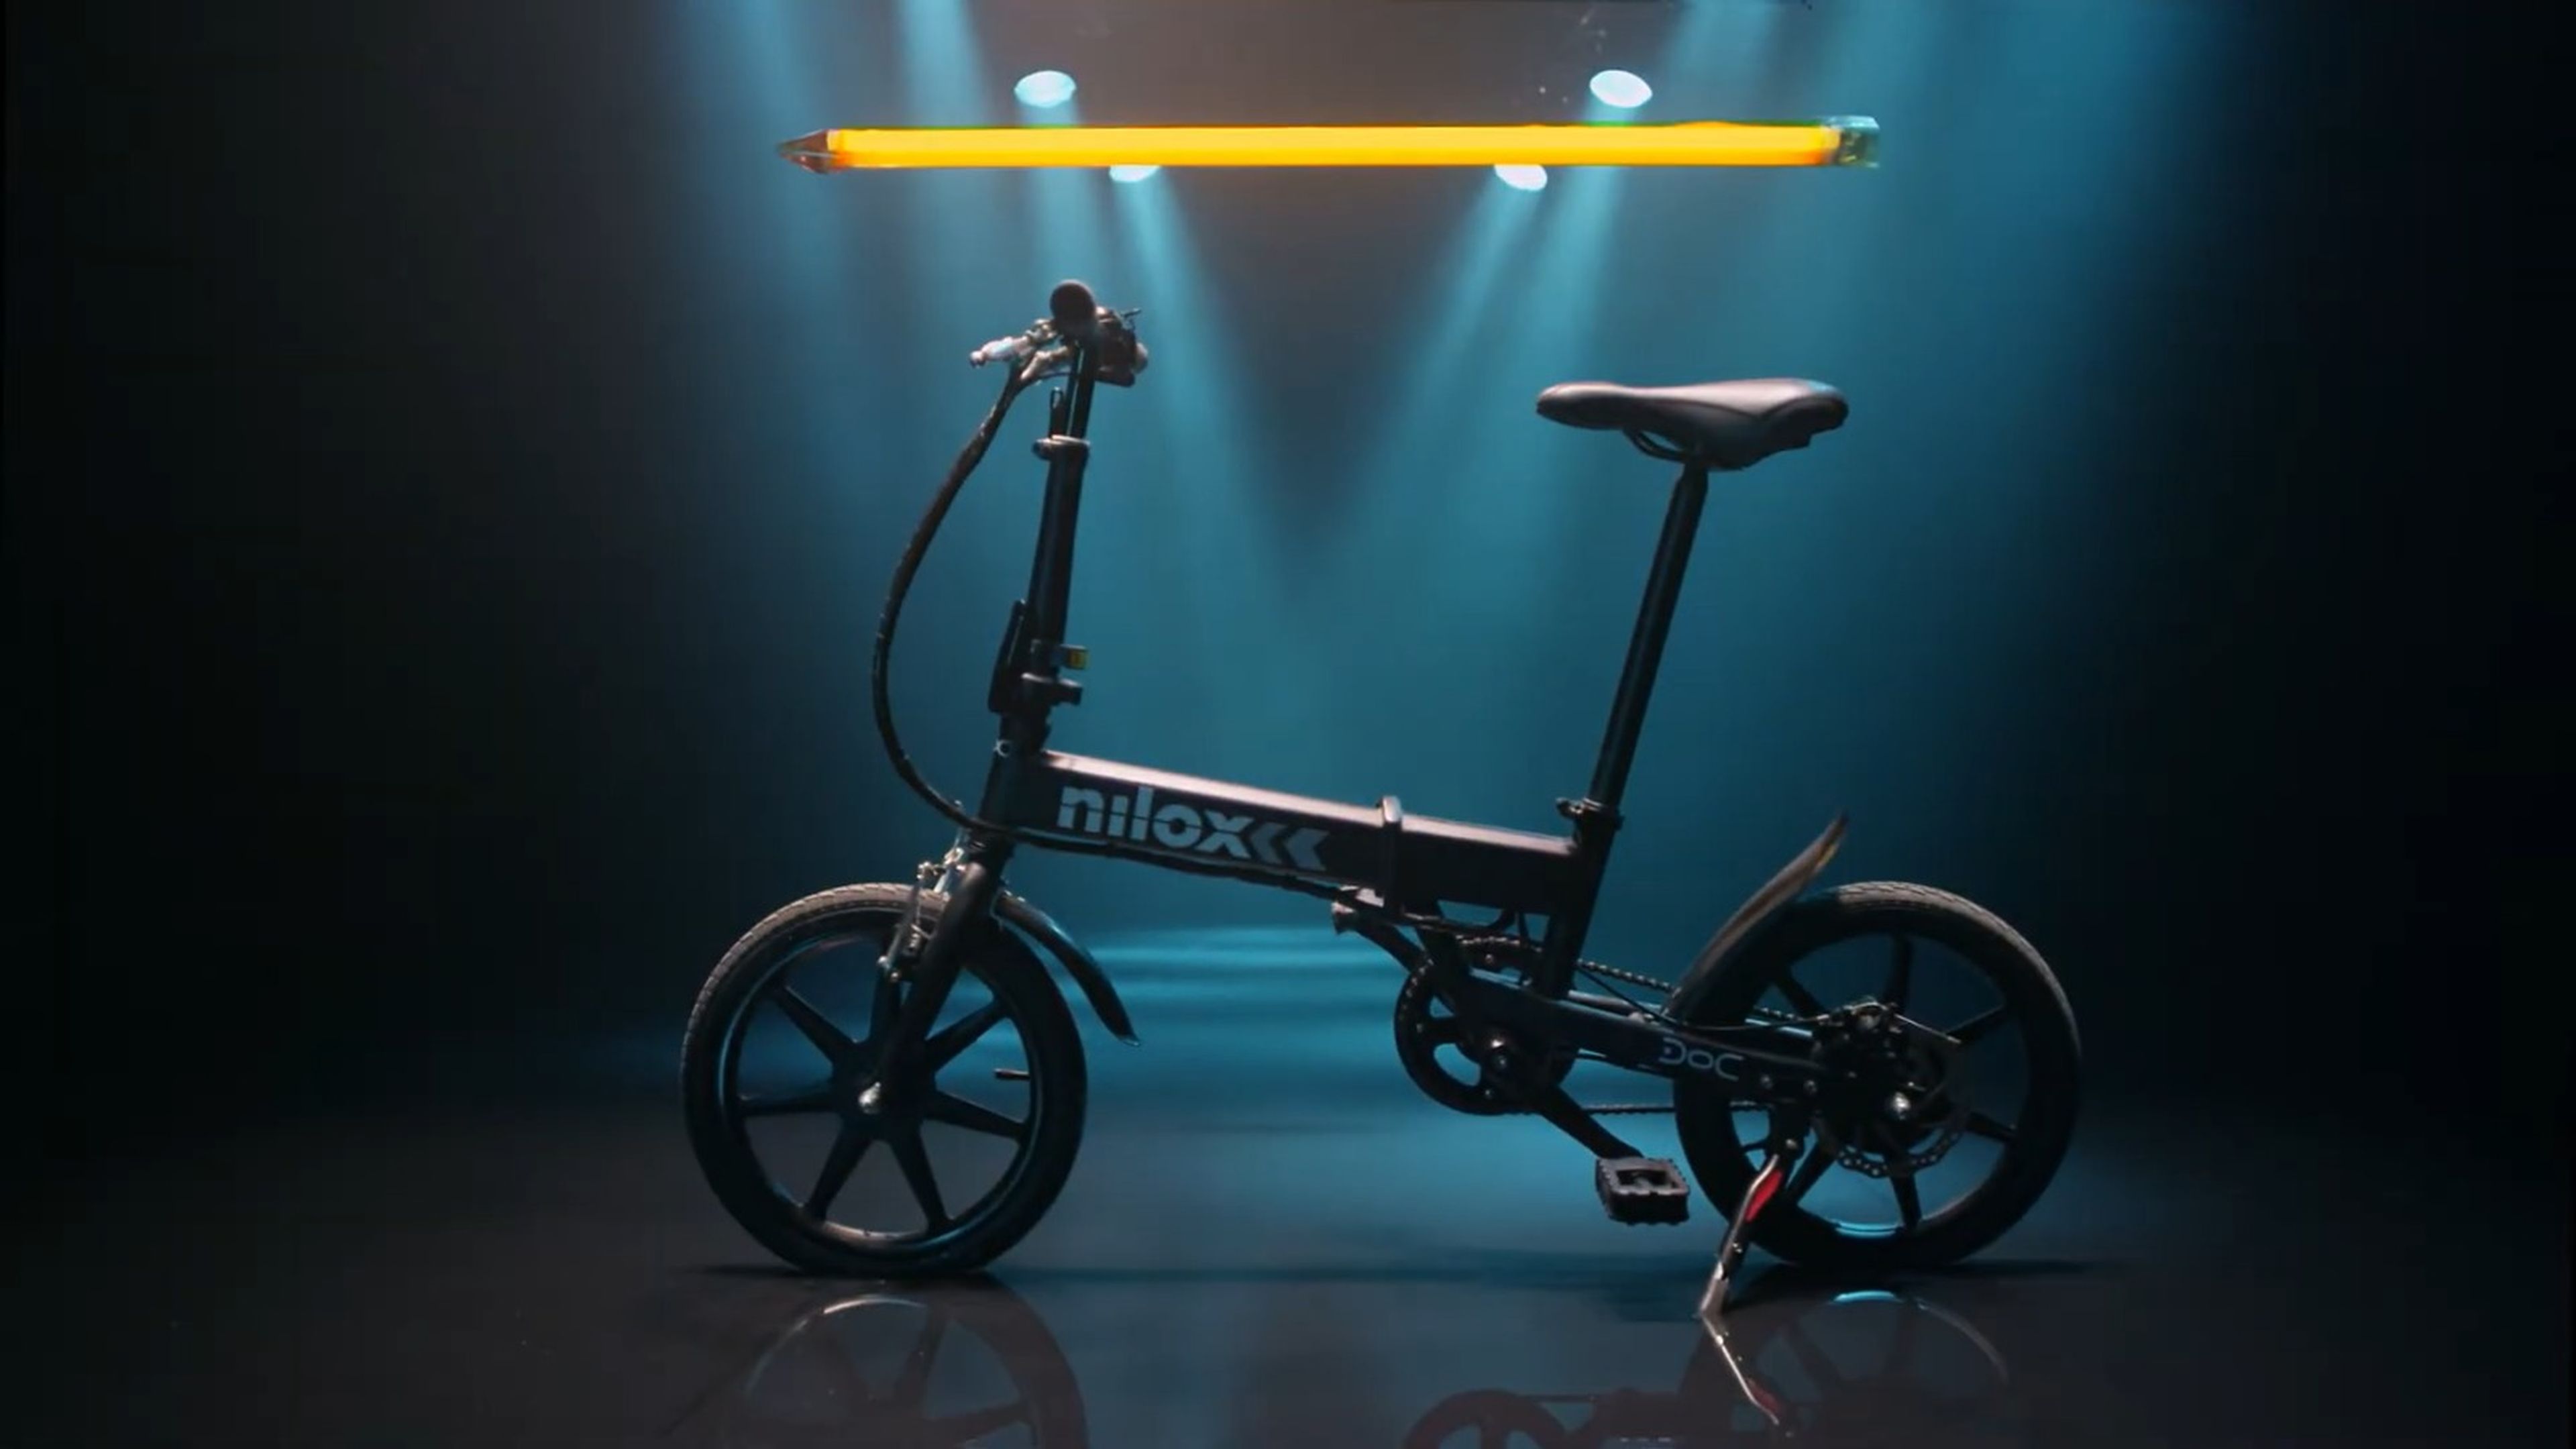 Convertir una bicicleta en eléctrica es posible con este kit barato de